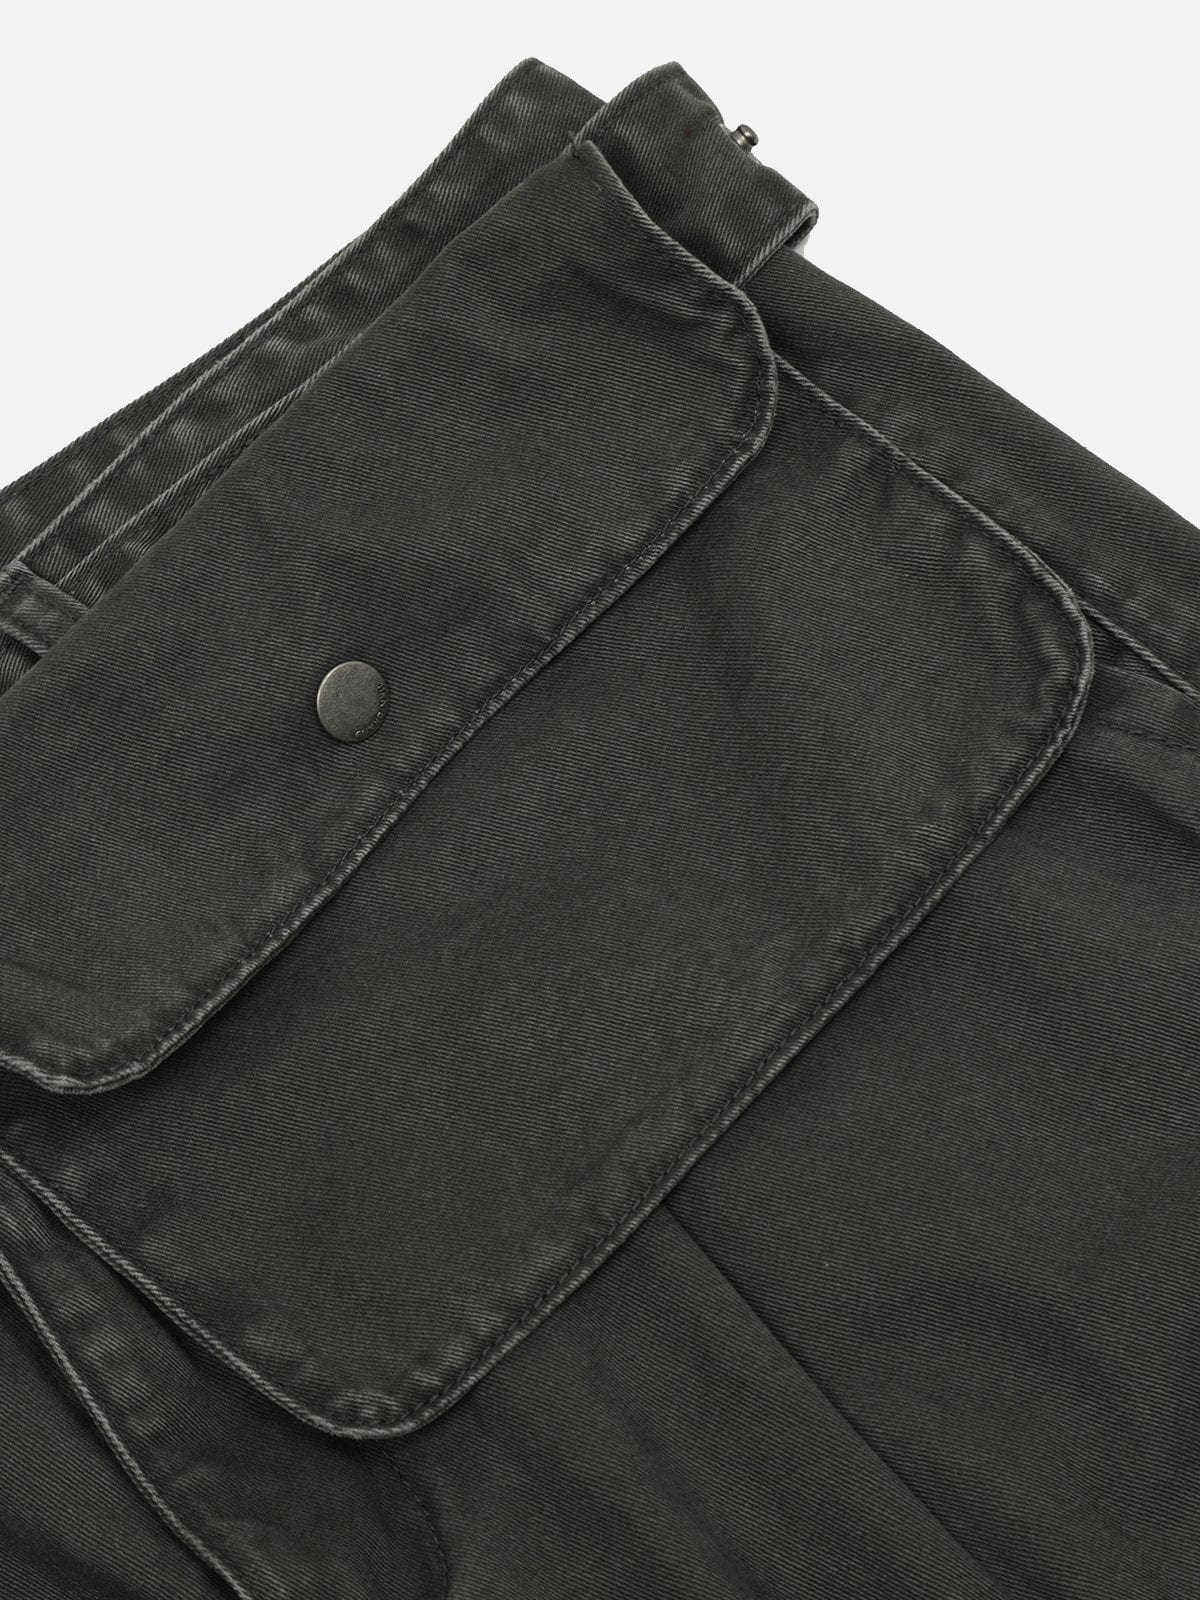 NEV Solid Color Waist Pocket Pants